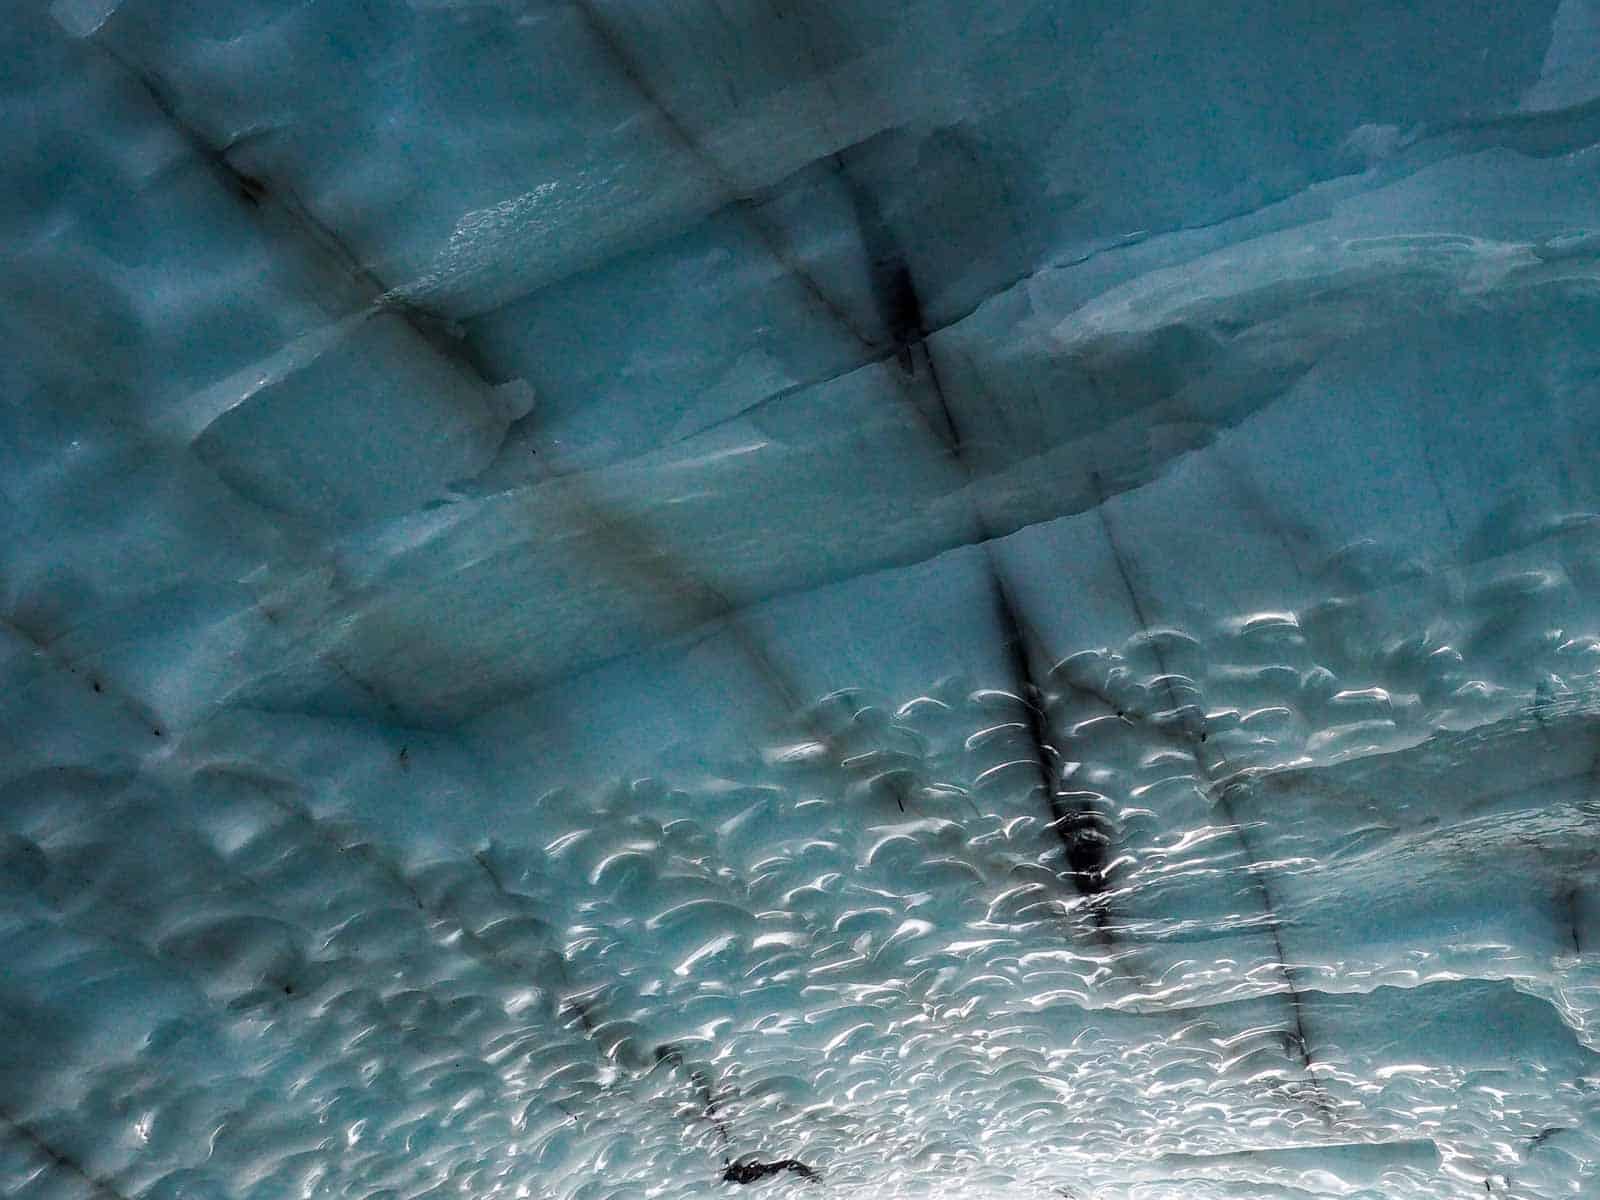 Schön zeigt sich die Struktur des Eises in der Ice Cave. Foto Faszination Kanada